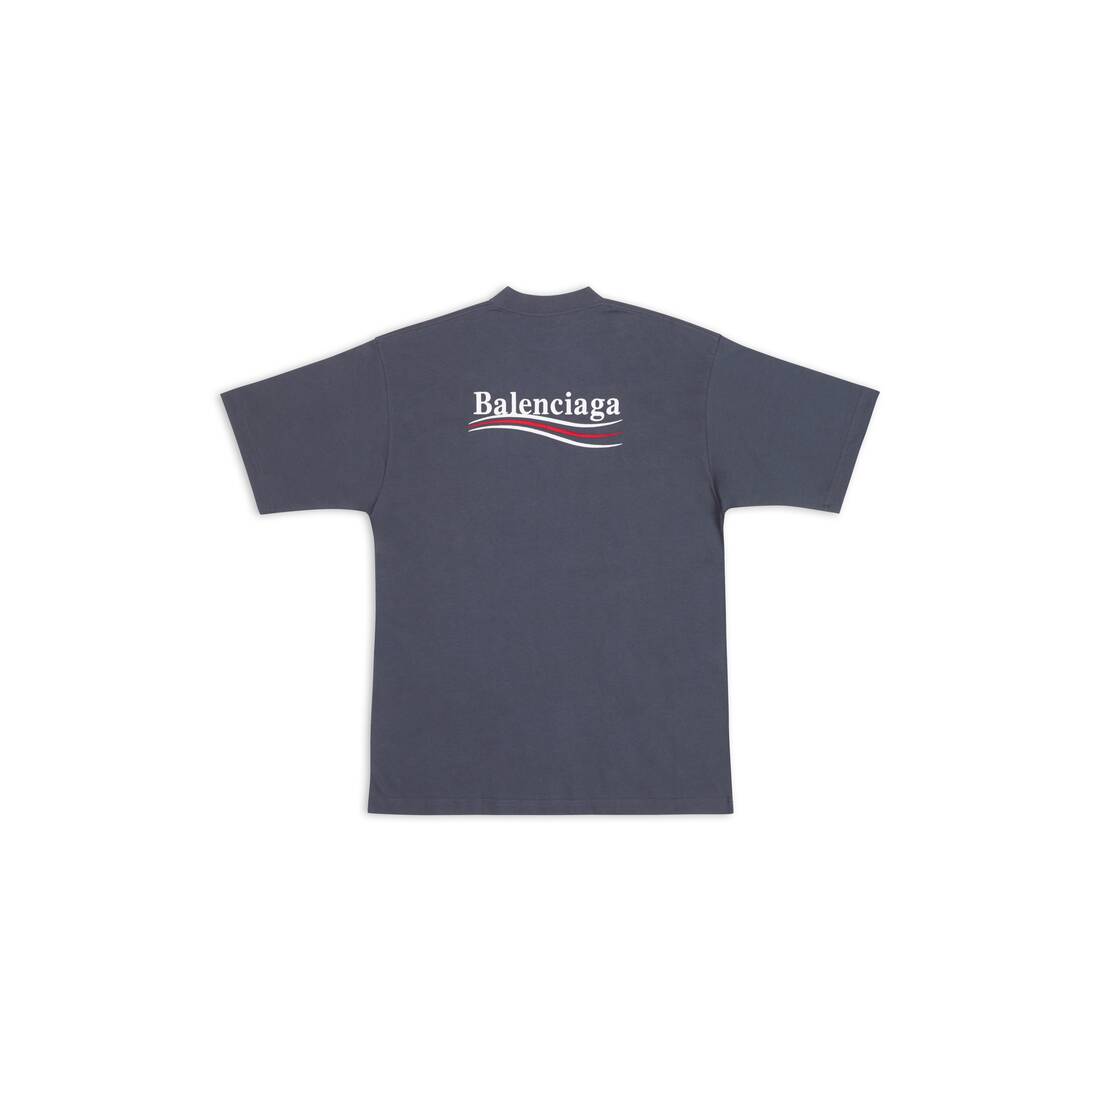 29,526円青山店購入 バレンシアガ Political Campaign Tシャツ